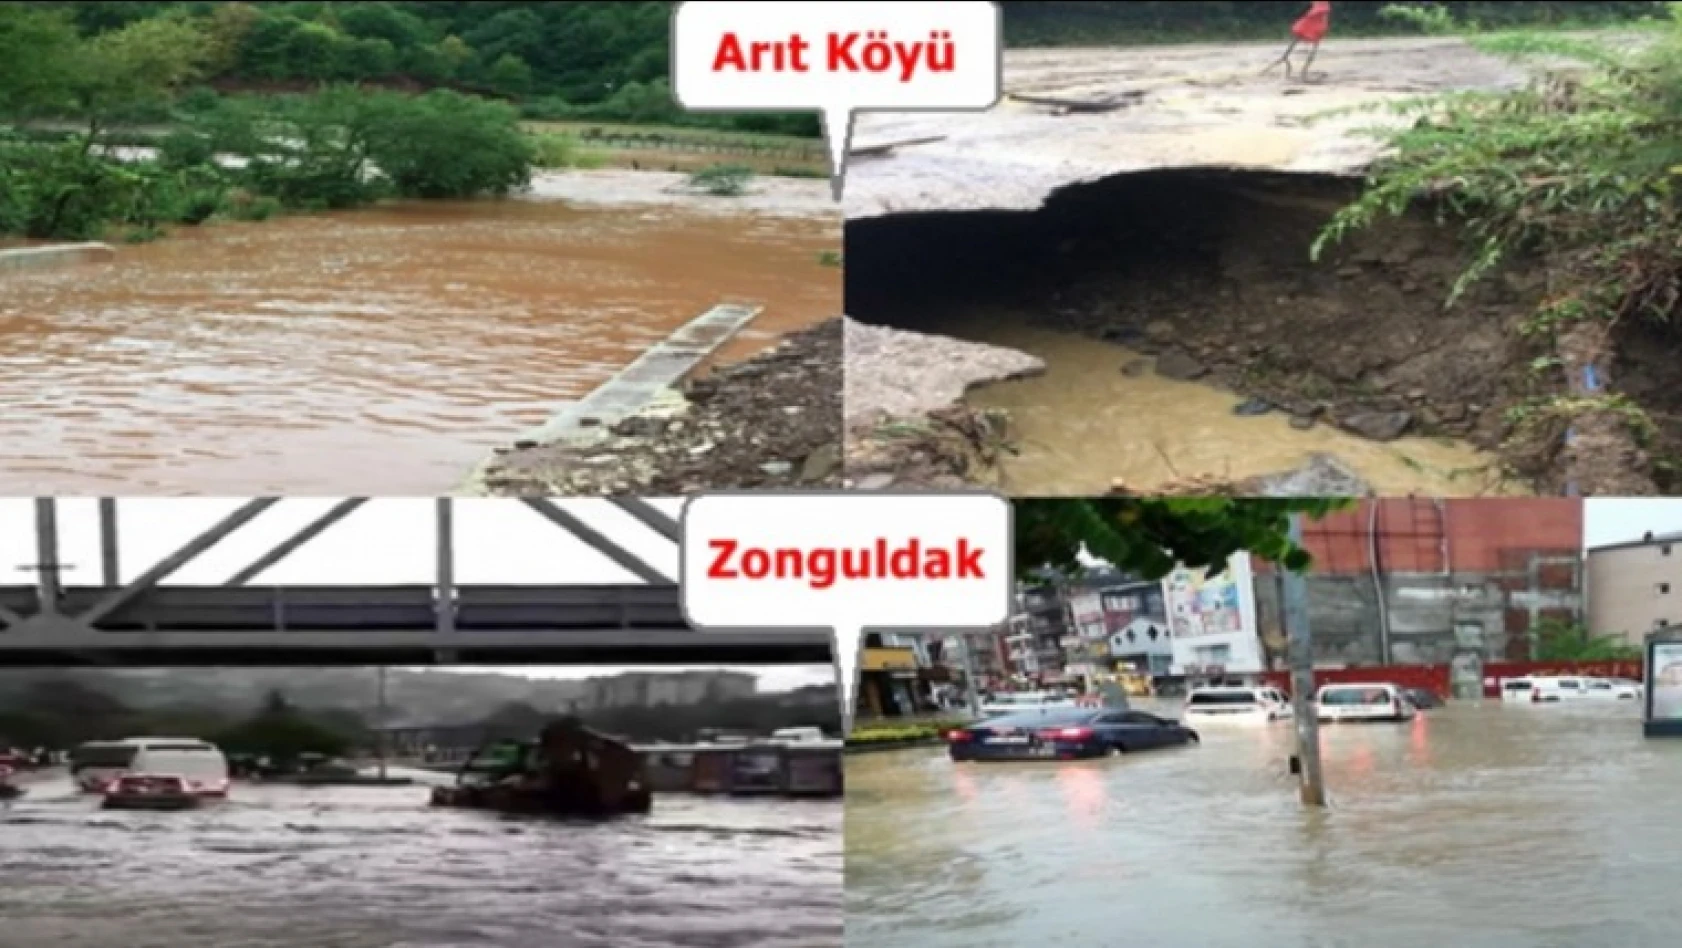 Sağanak yağış Arıt ve Zonguldak'ı vurdu